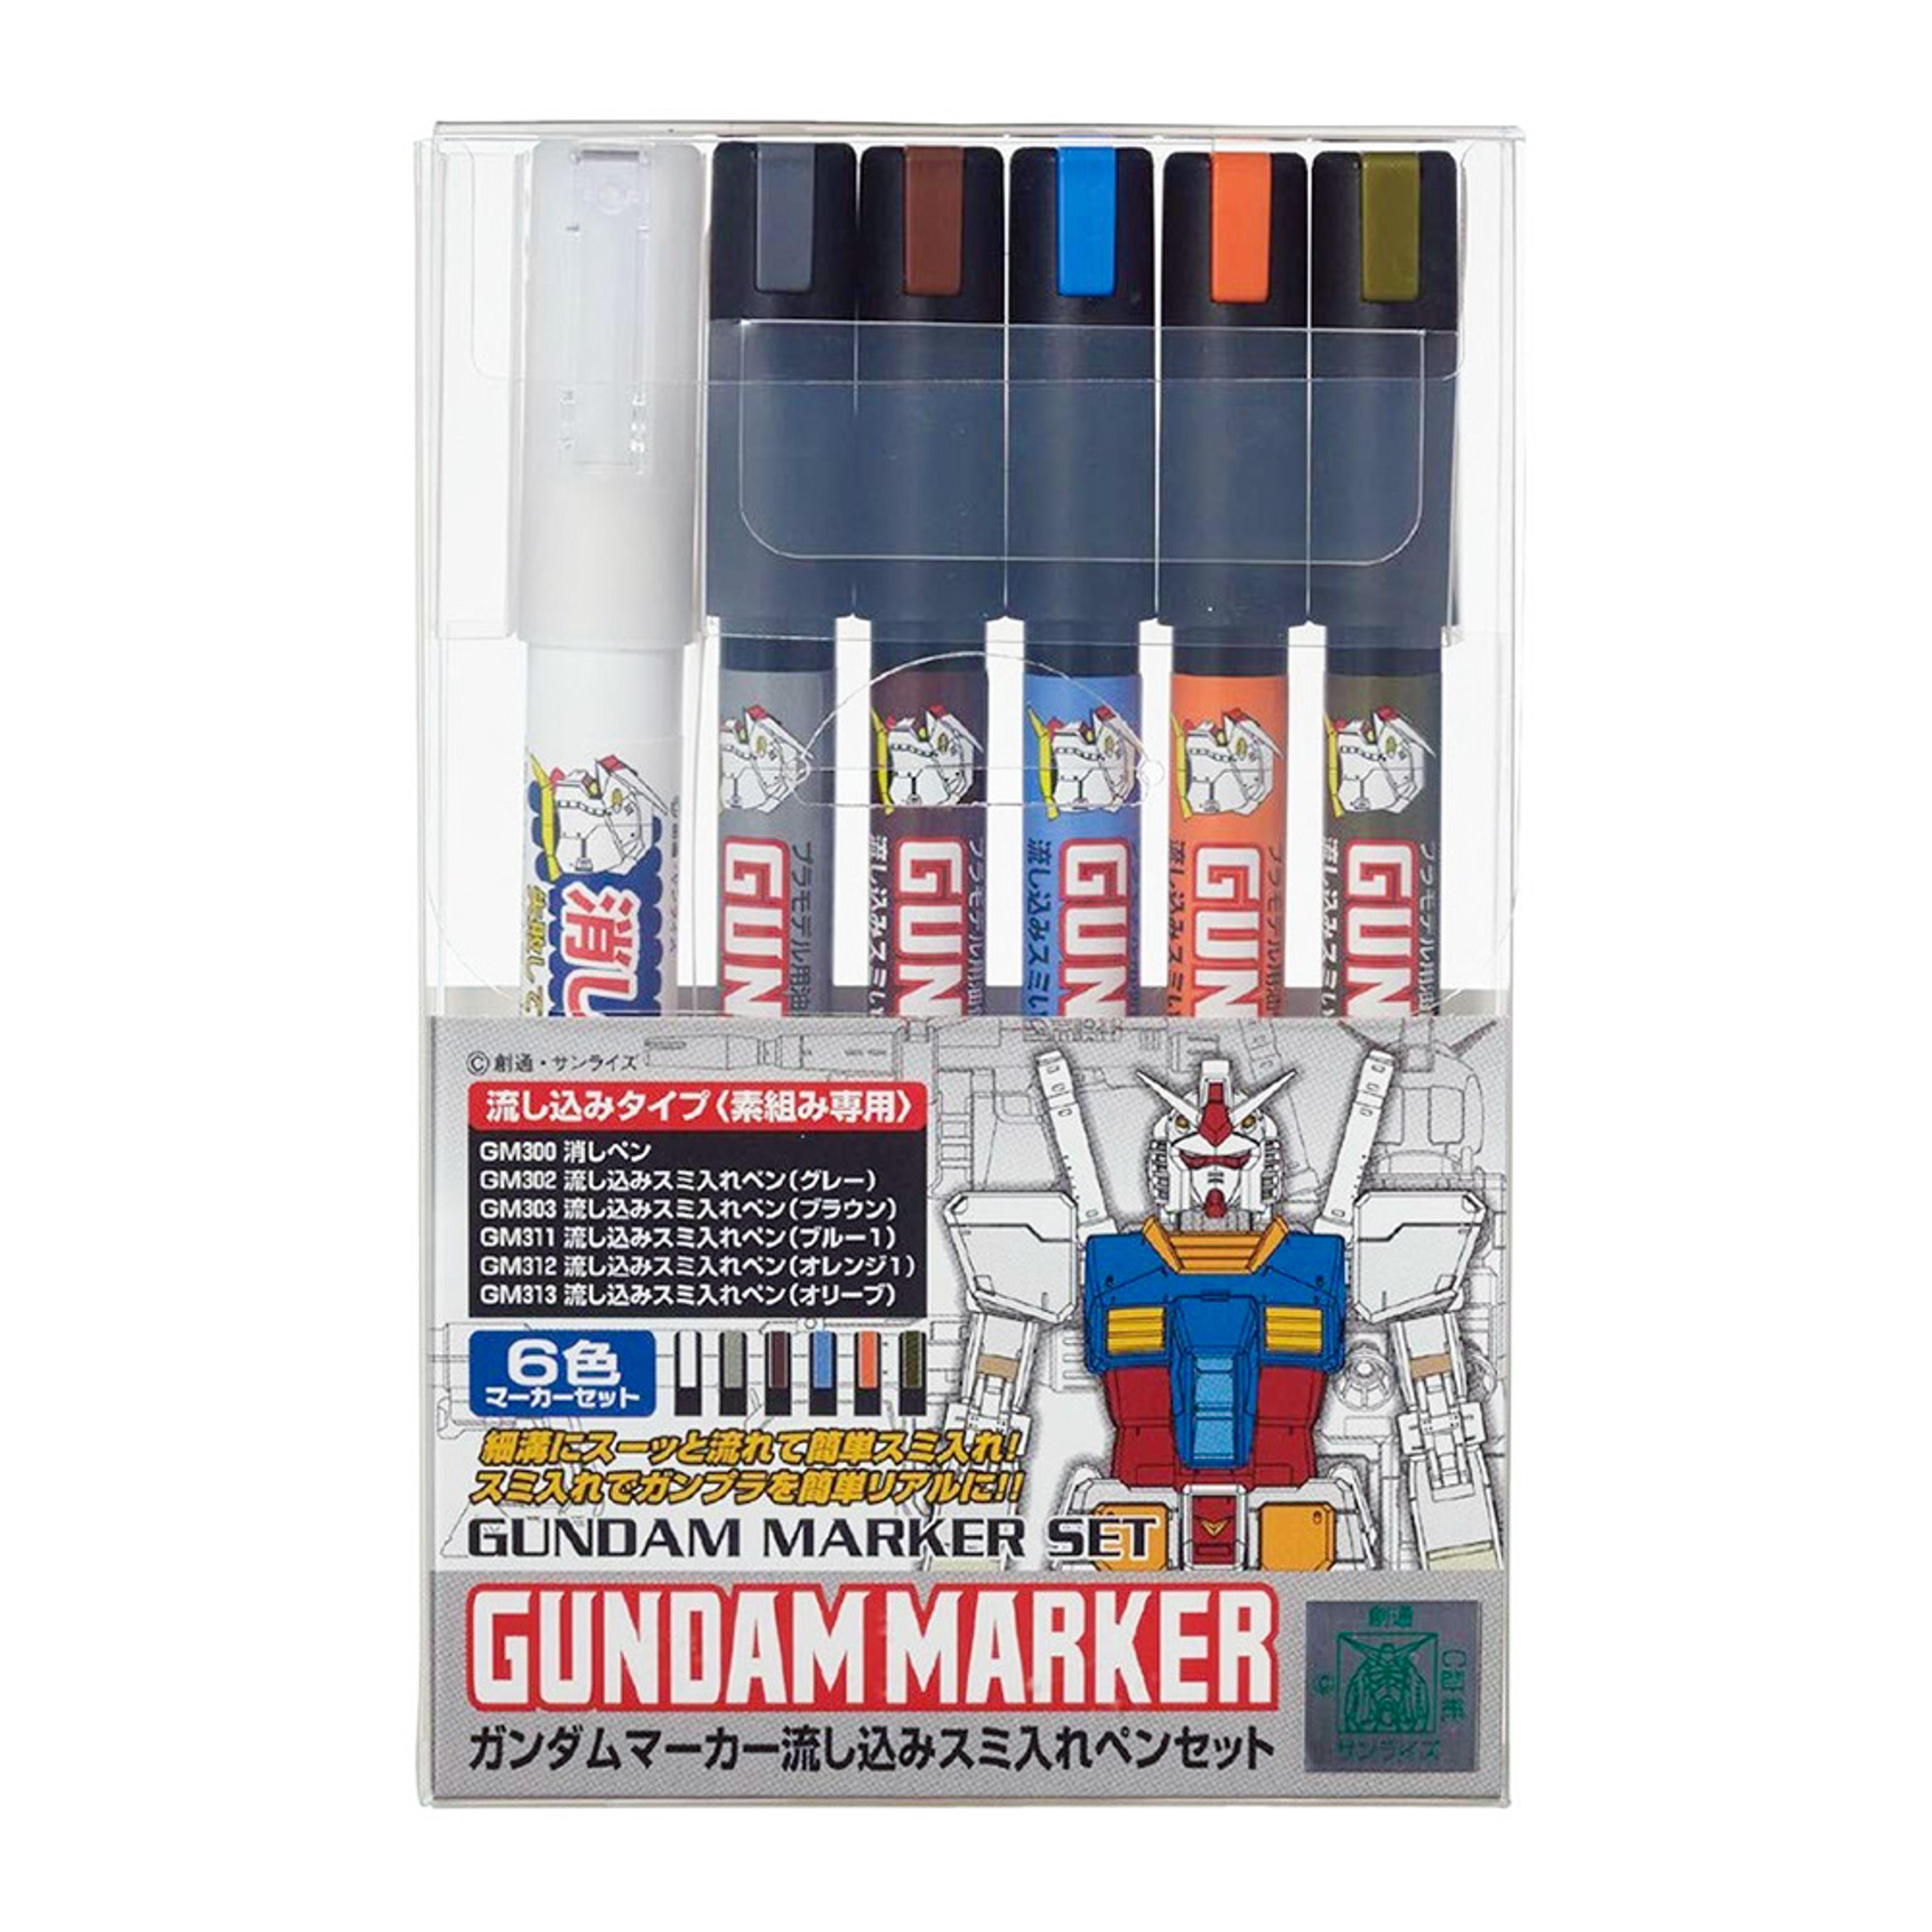 Gundam Marker Pour Type Pen Set